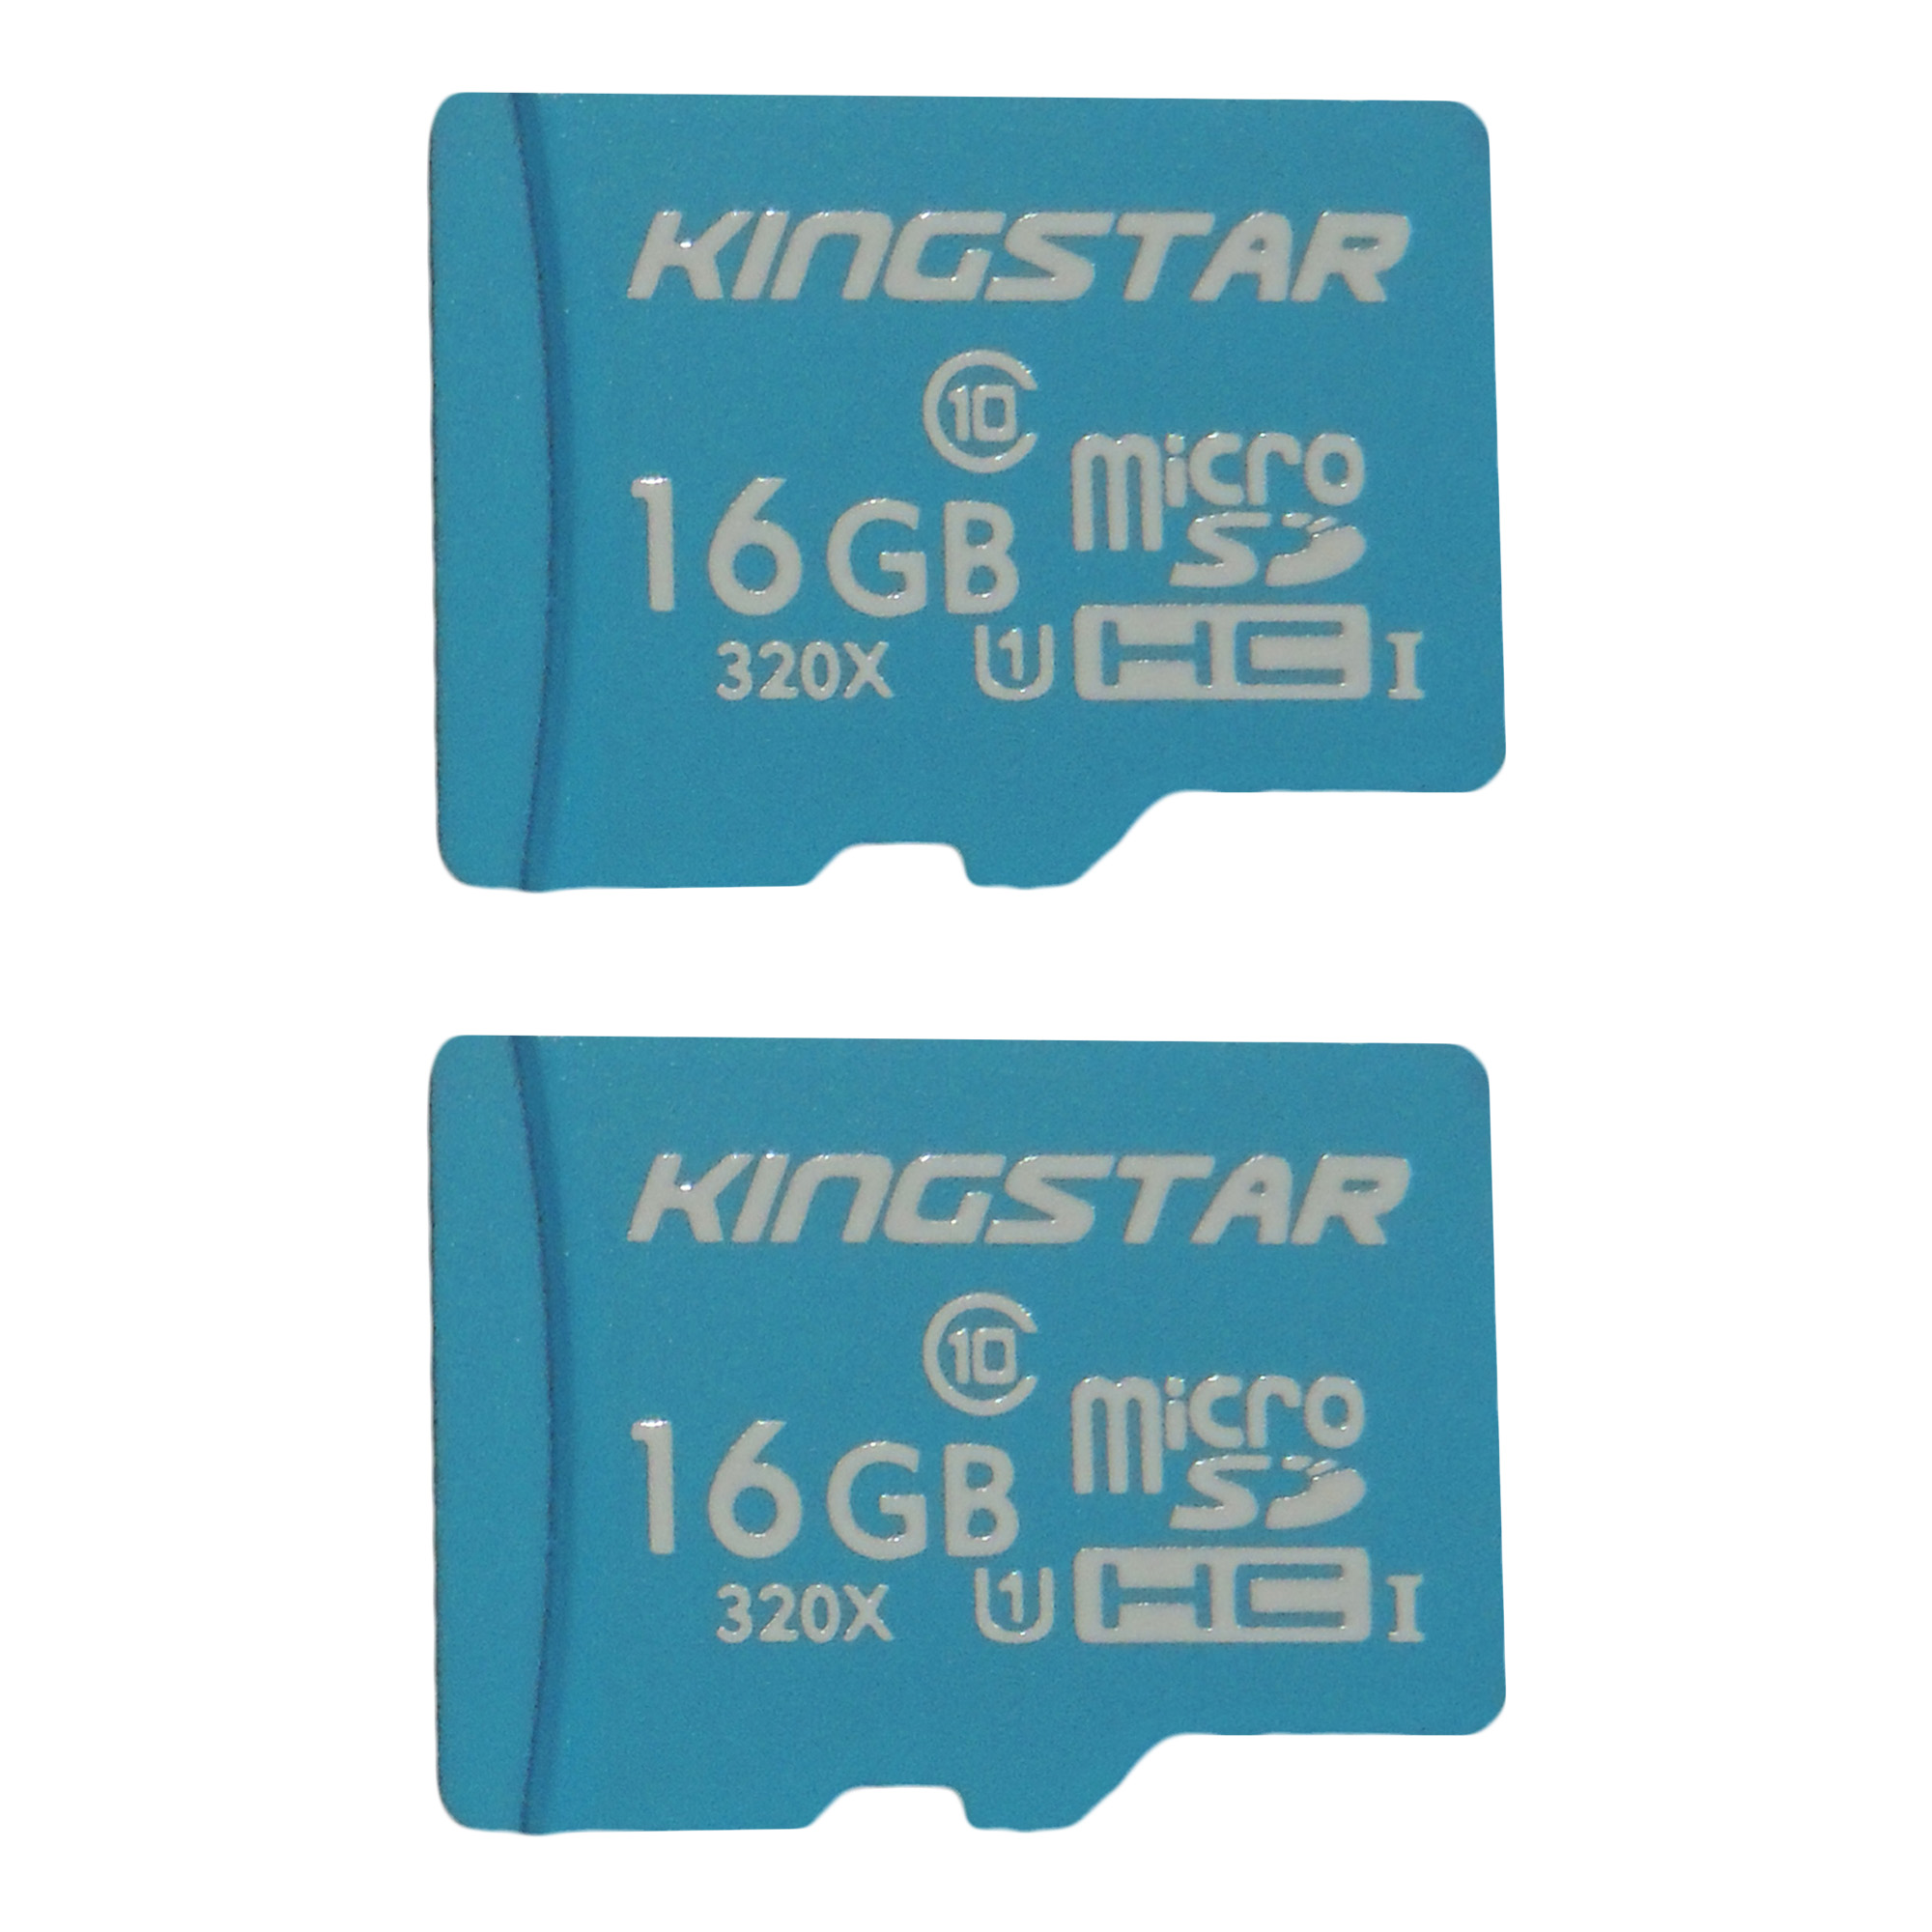 کارت حافظه microSDHC کینگ استار مدل X533 کلاس 10 استاندارد UHS-I U1 سرعت 85MBps ظرفیت 16 گیگابایت بسته دو عددی